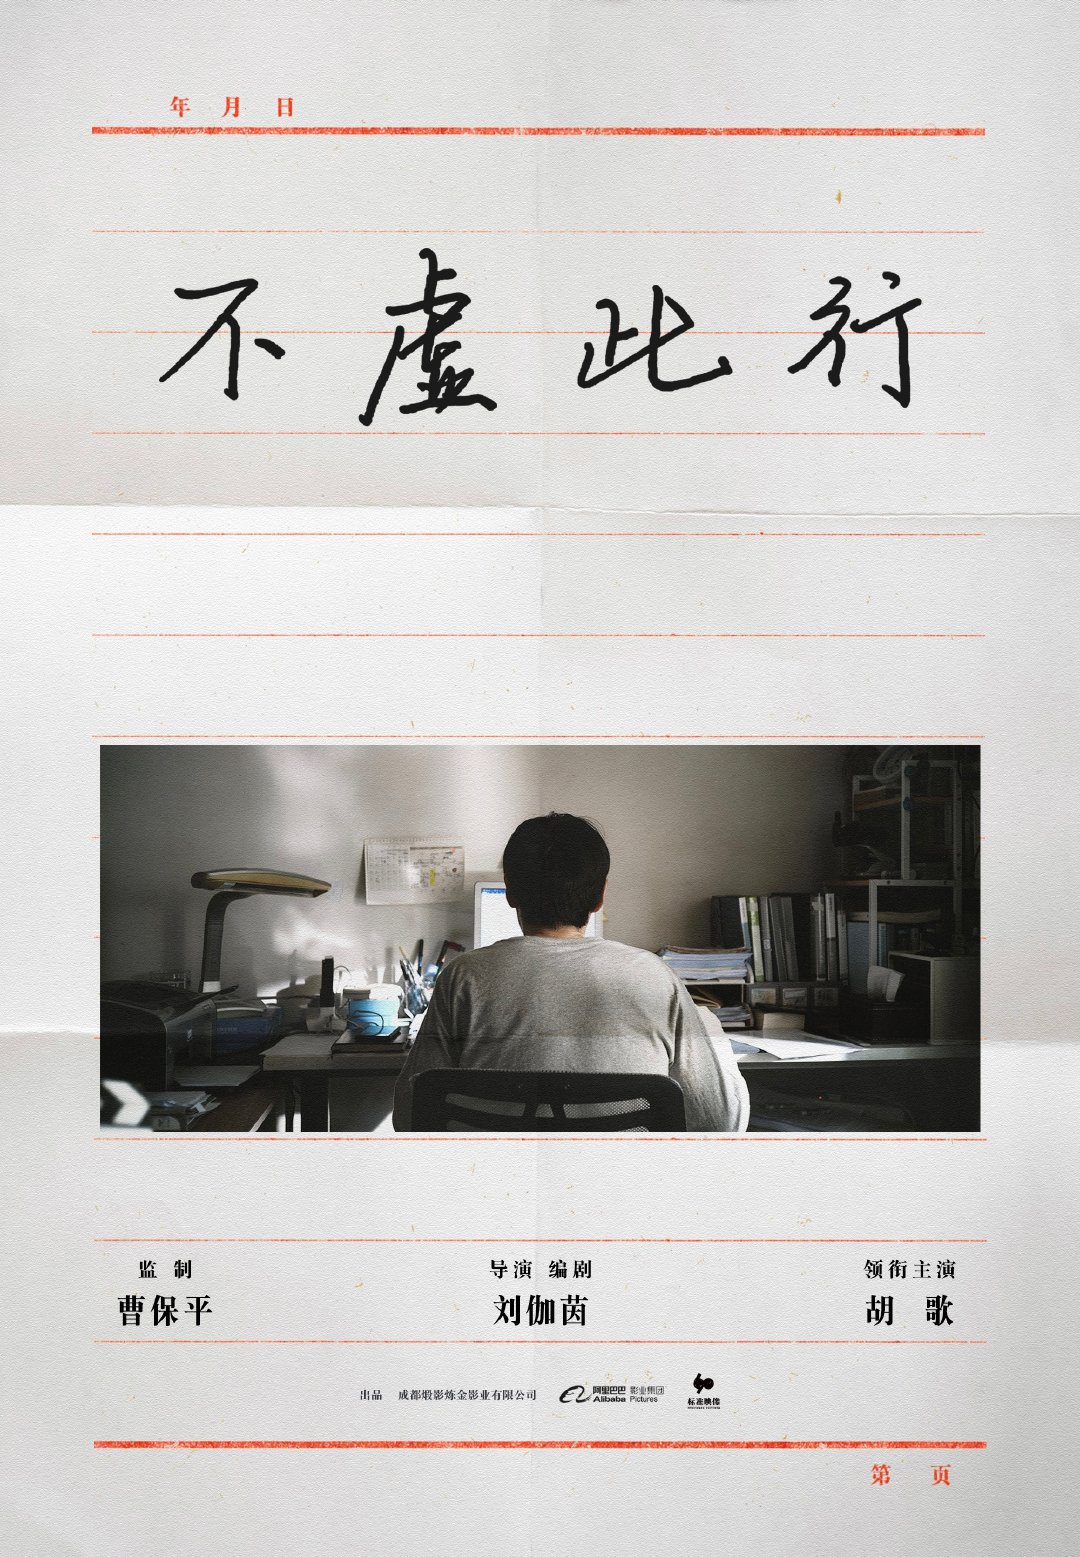 由曹保平监制、刘伽茵编剧及执导、胡歌领衔主演的新片《不虚此行》，今日正式官宣。